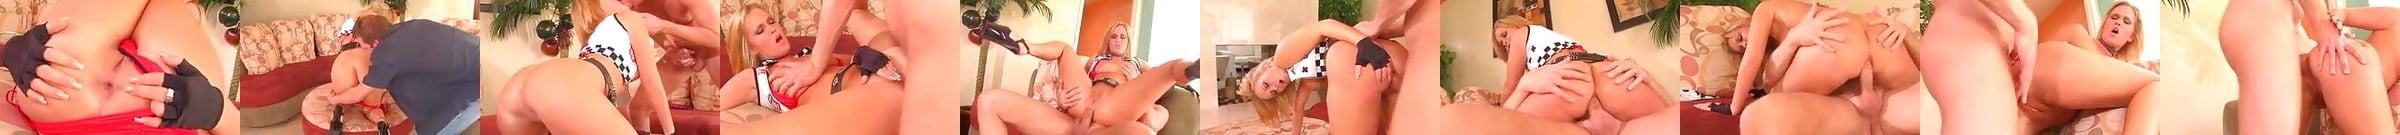 Sasha Knox Free Porn Star Videos 93 Xhamster